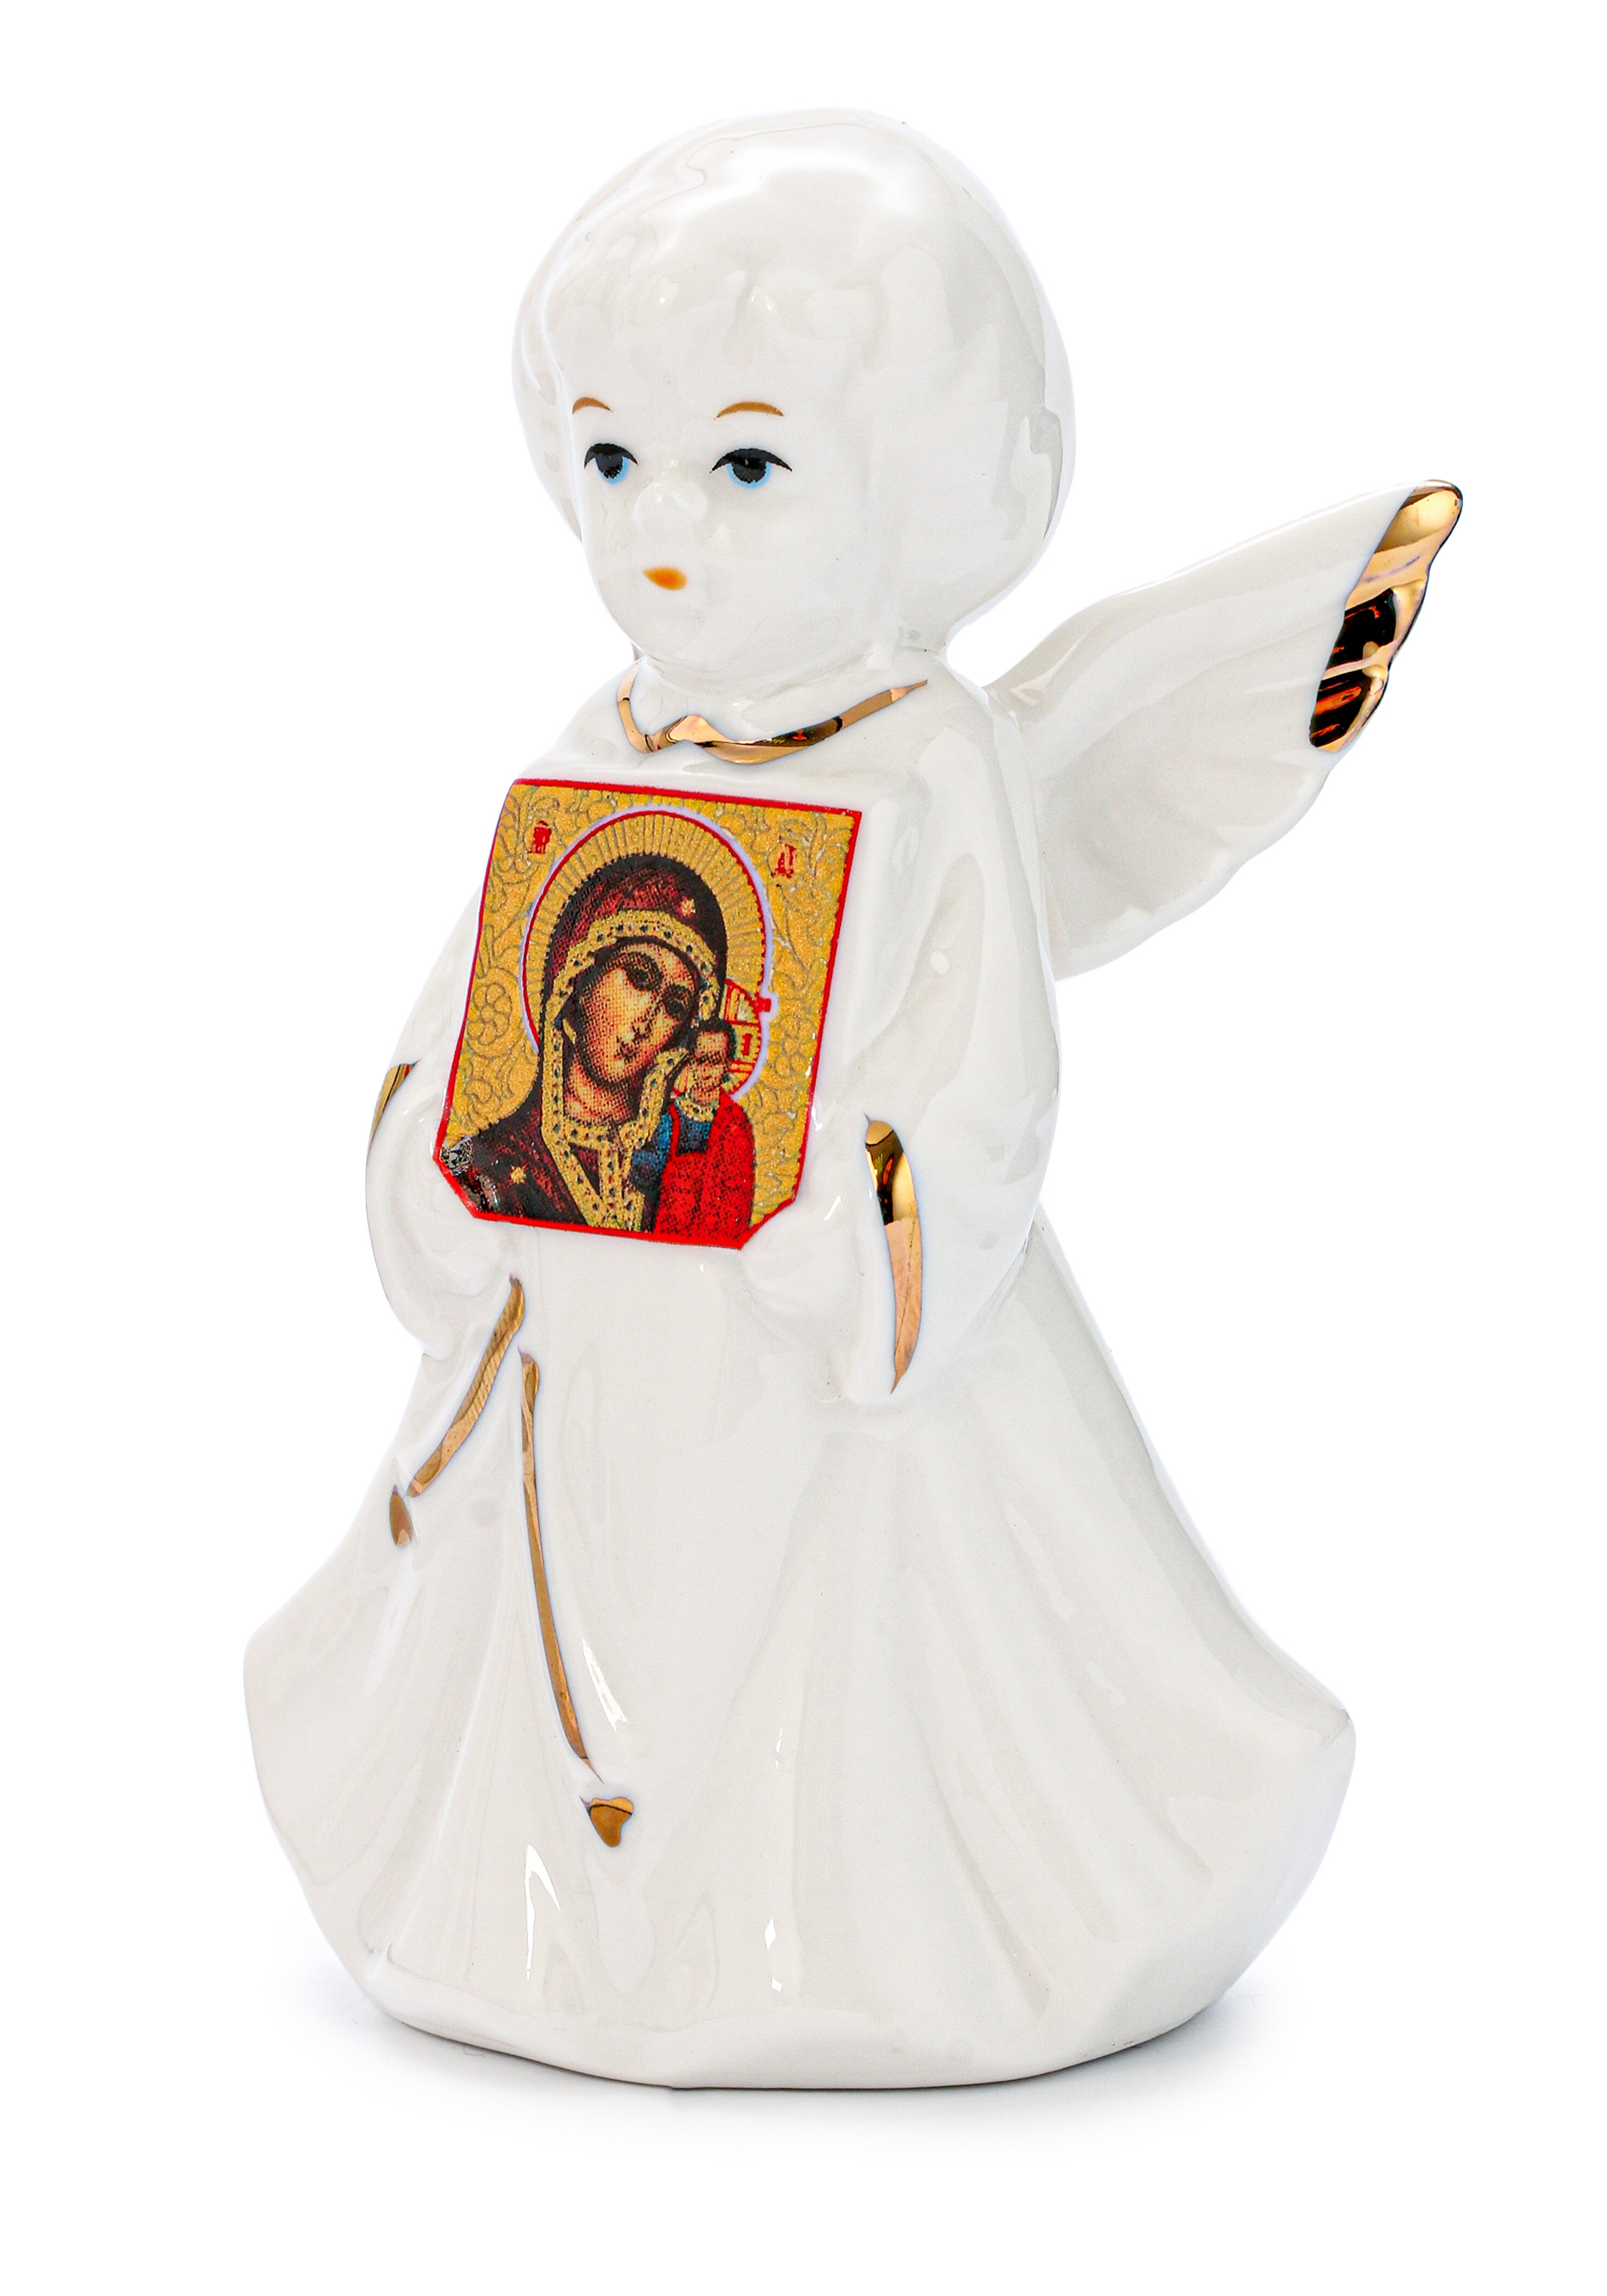 Статуэтка "Ангел с иконой" Lefard, цвет белый, размер 10 см - фото 6